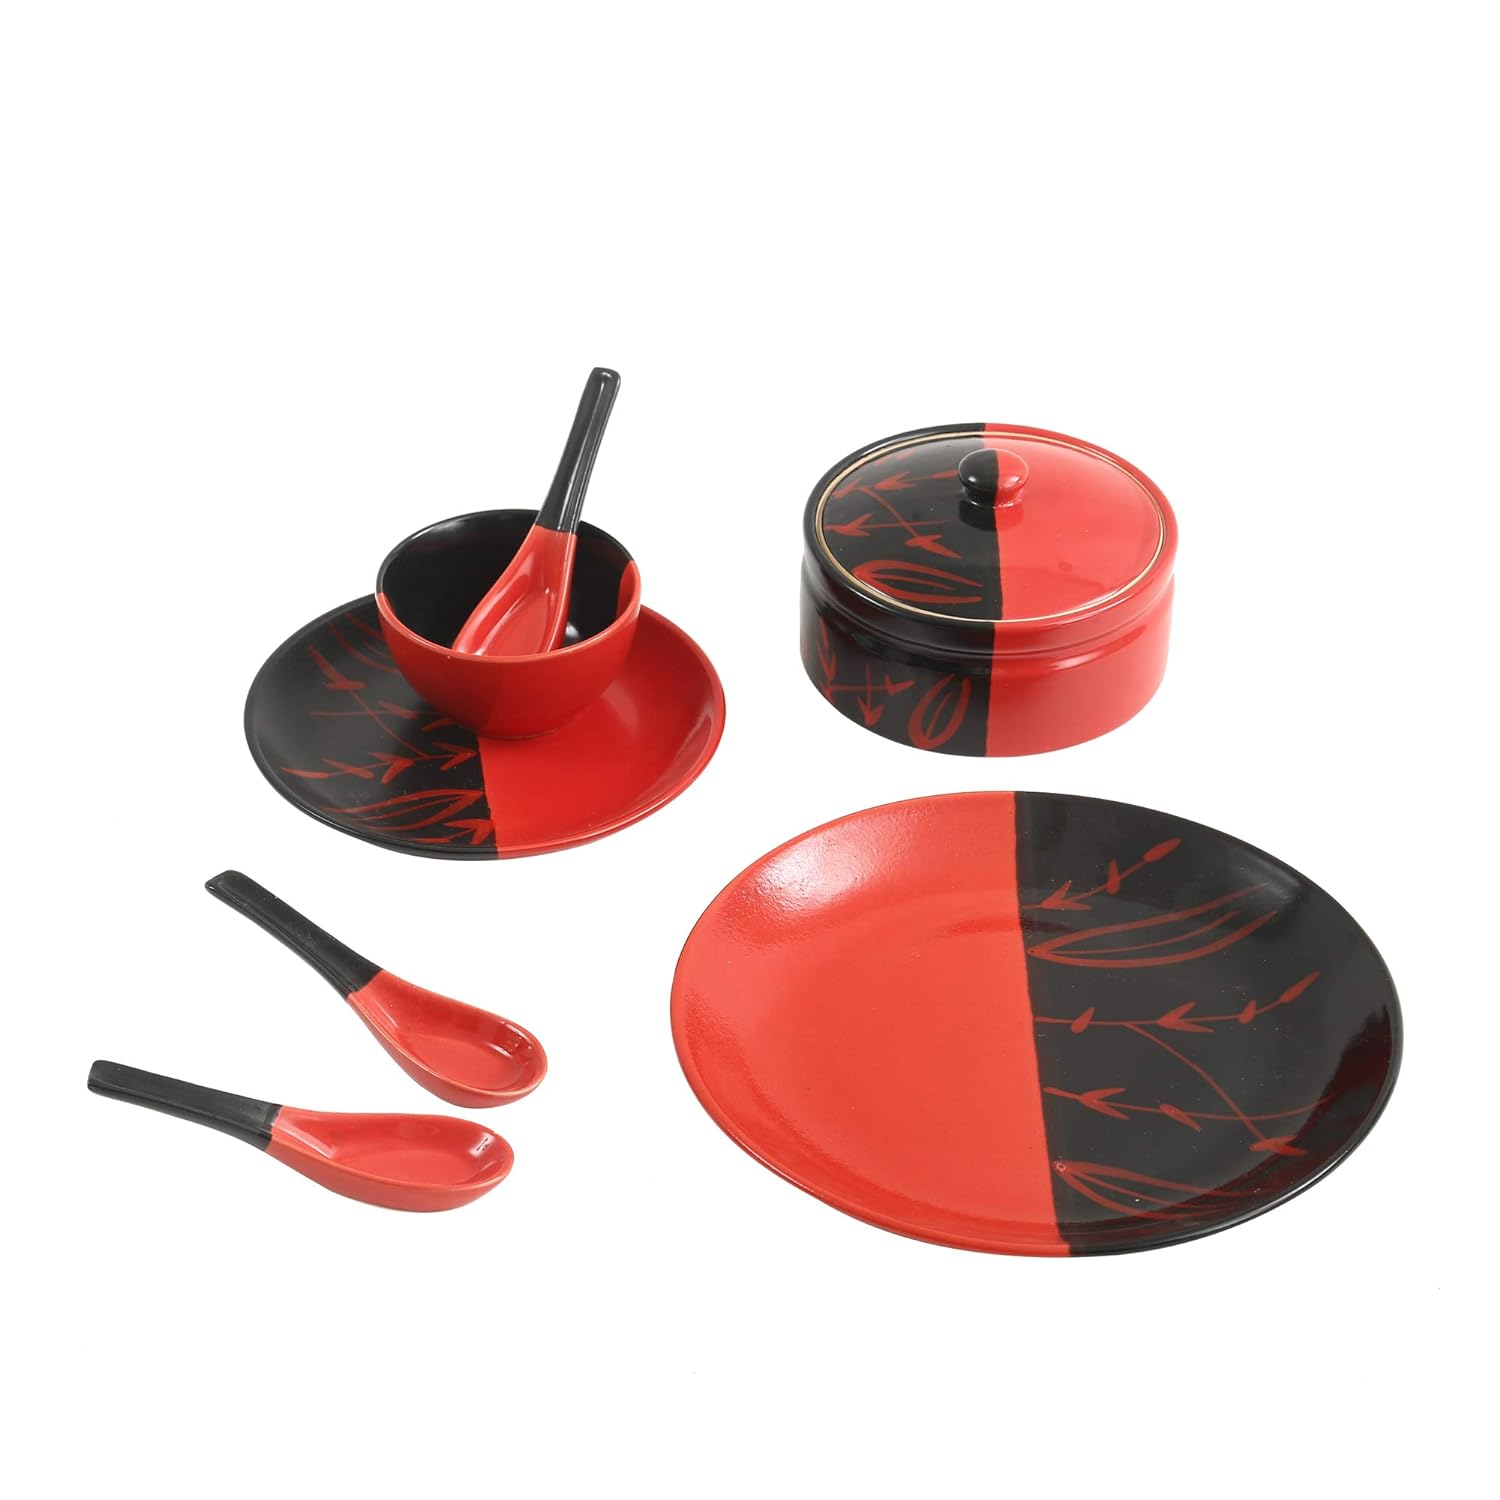 Caffeine Ceramic Handmade Half Red and Black Dinner Set (37 pieces - Microwave & Dishwasher Safe) - Caffeine Premium Stoneware